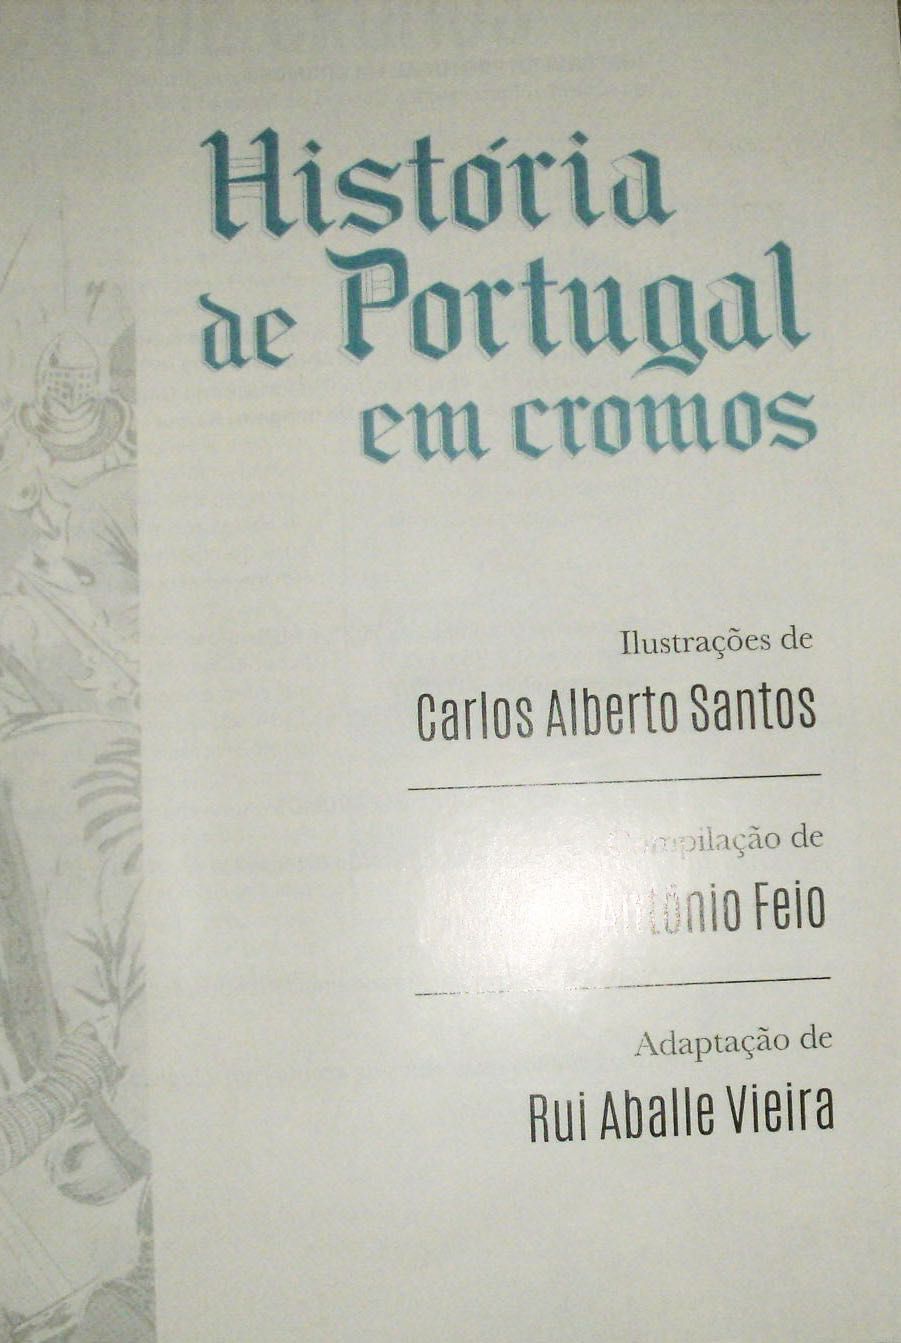 Caderneta completa História de Portugal em cromos